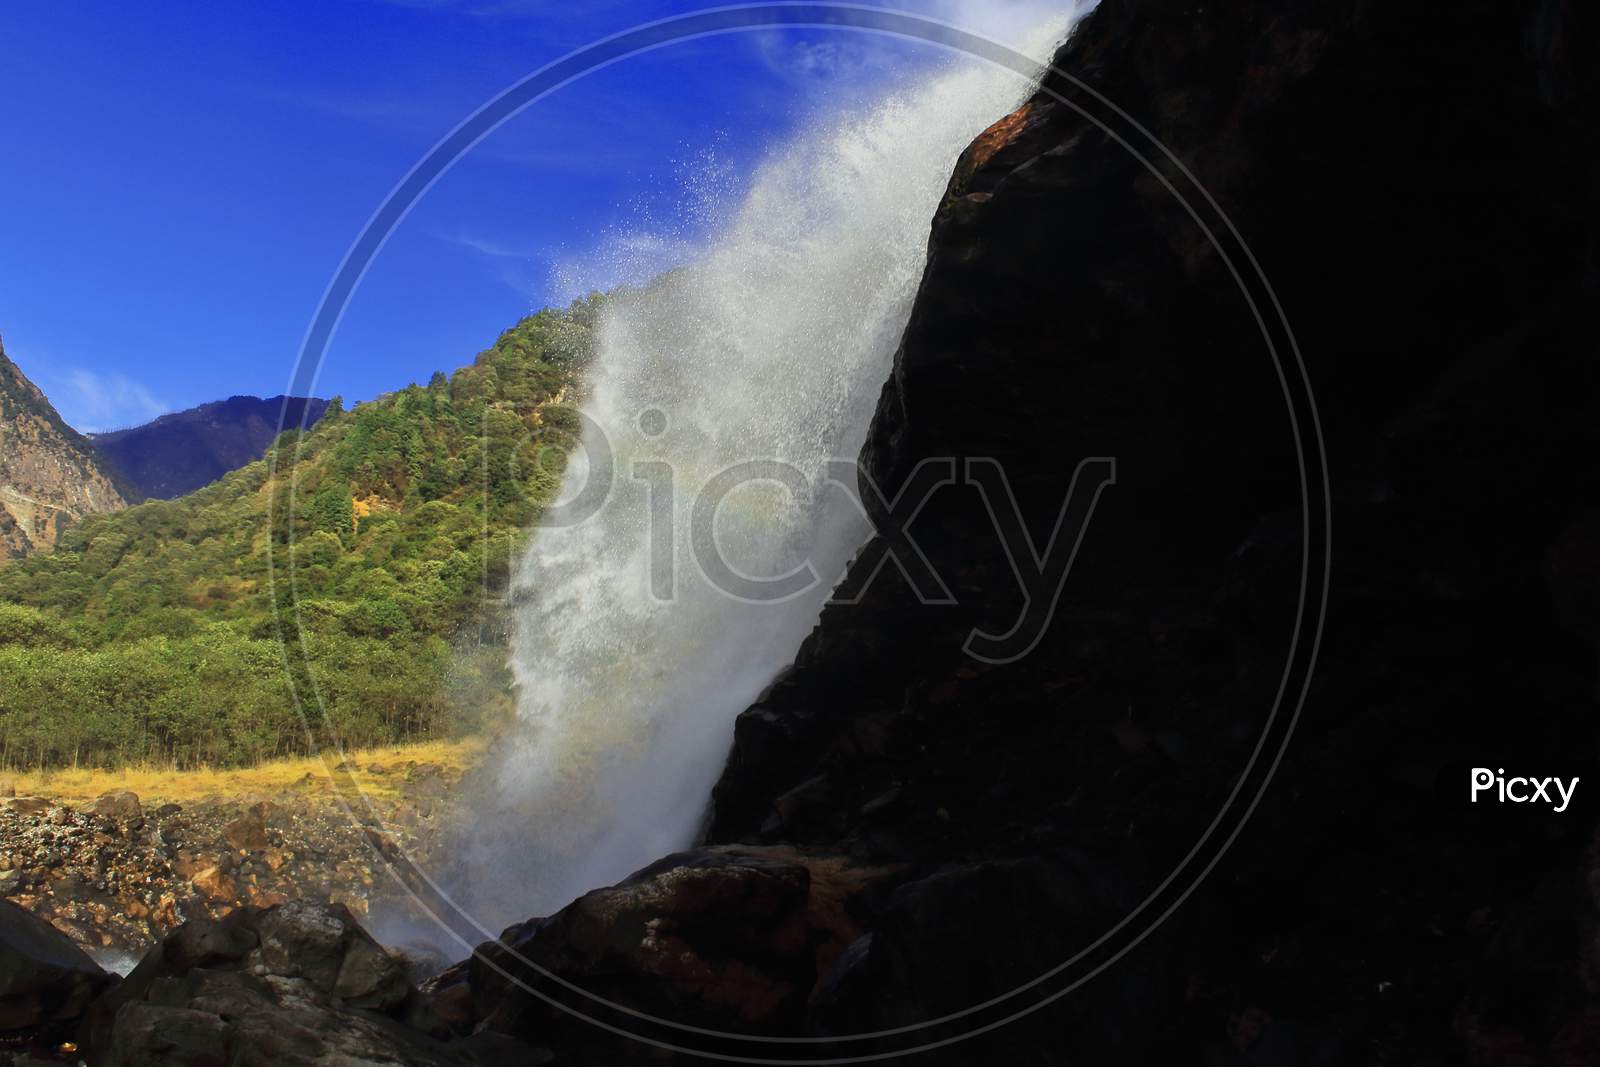 breathtaking view of nuranang falls or jang falls or bong bong falls